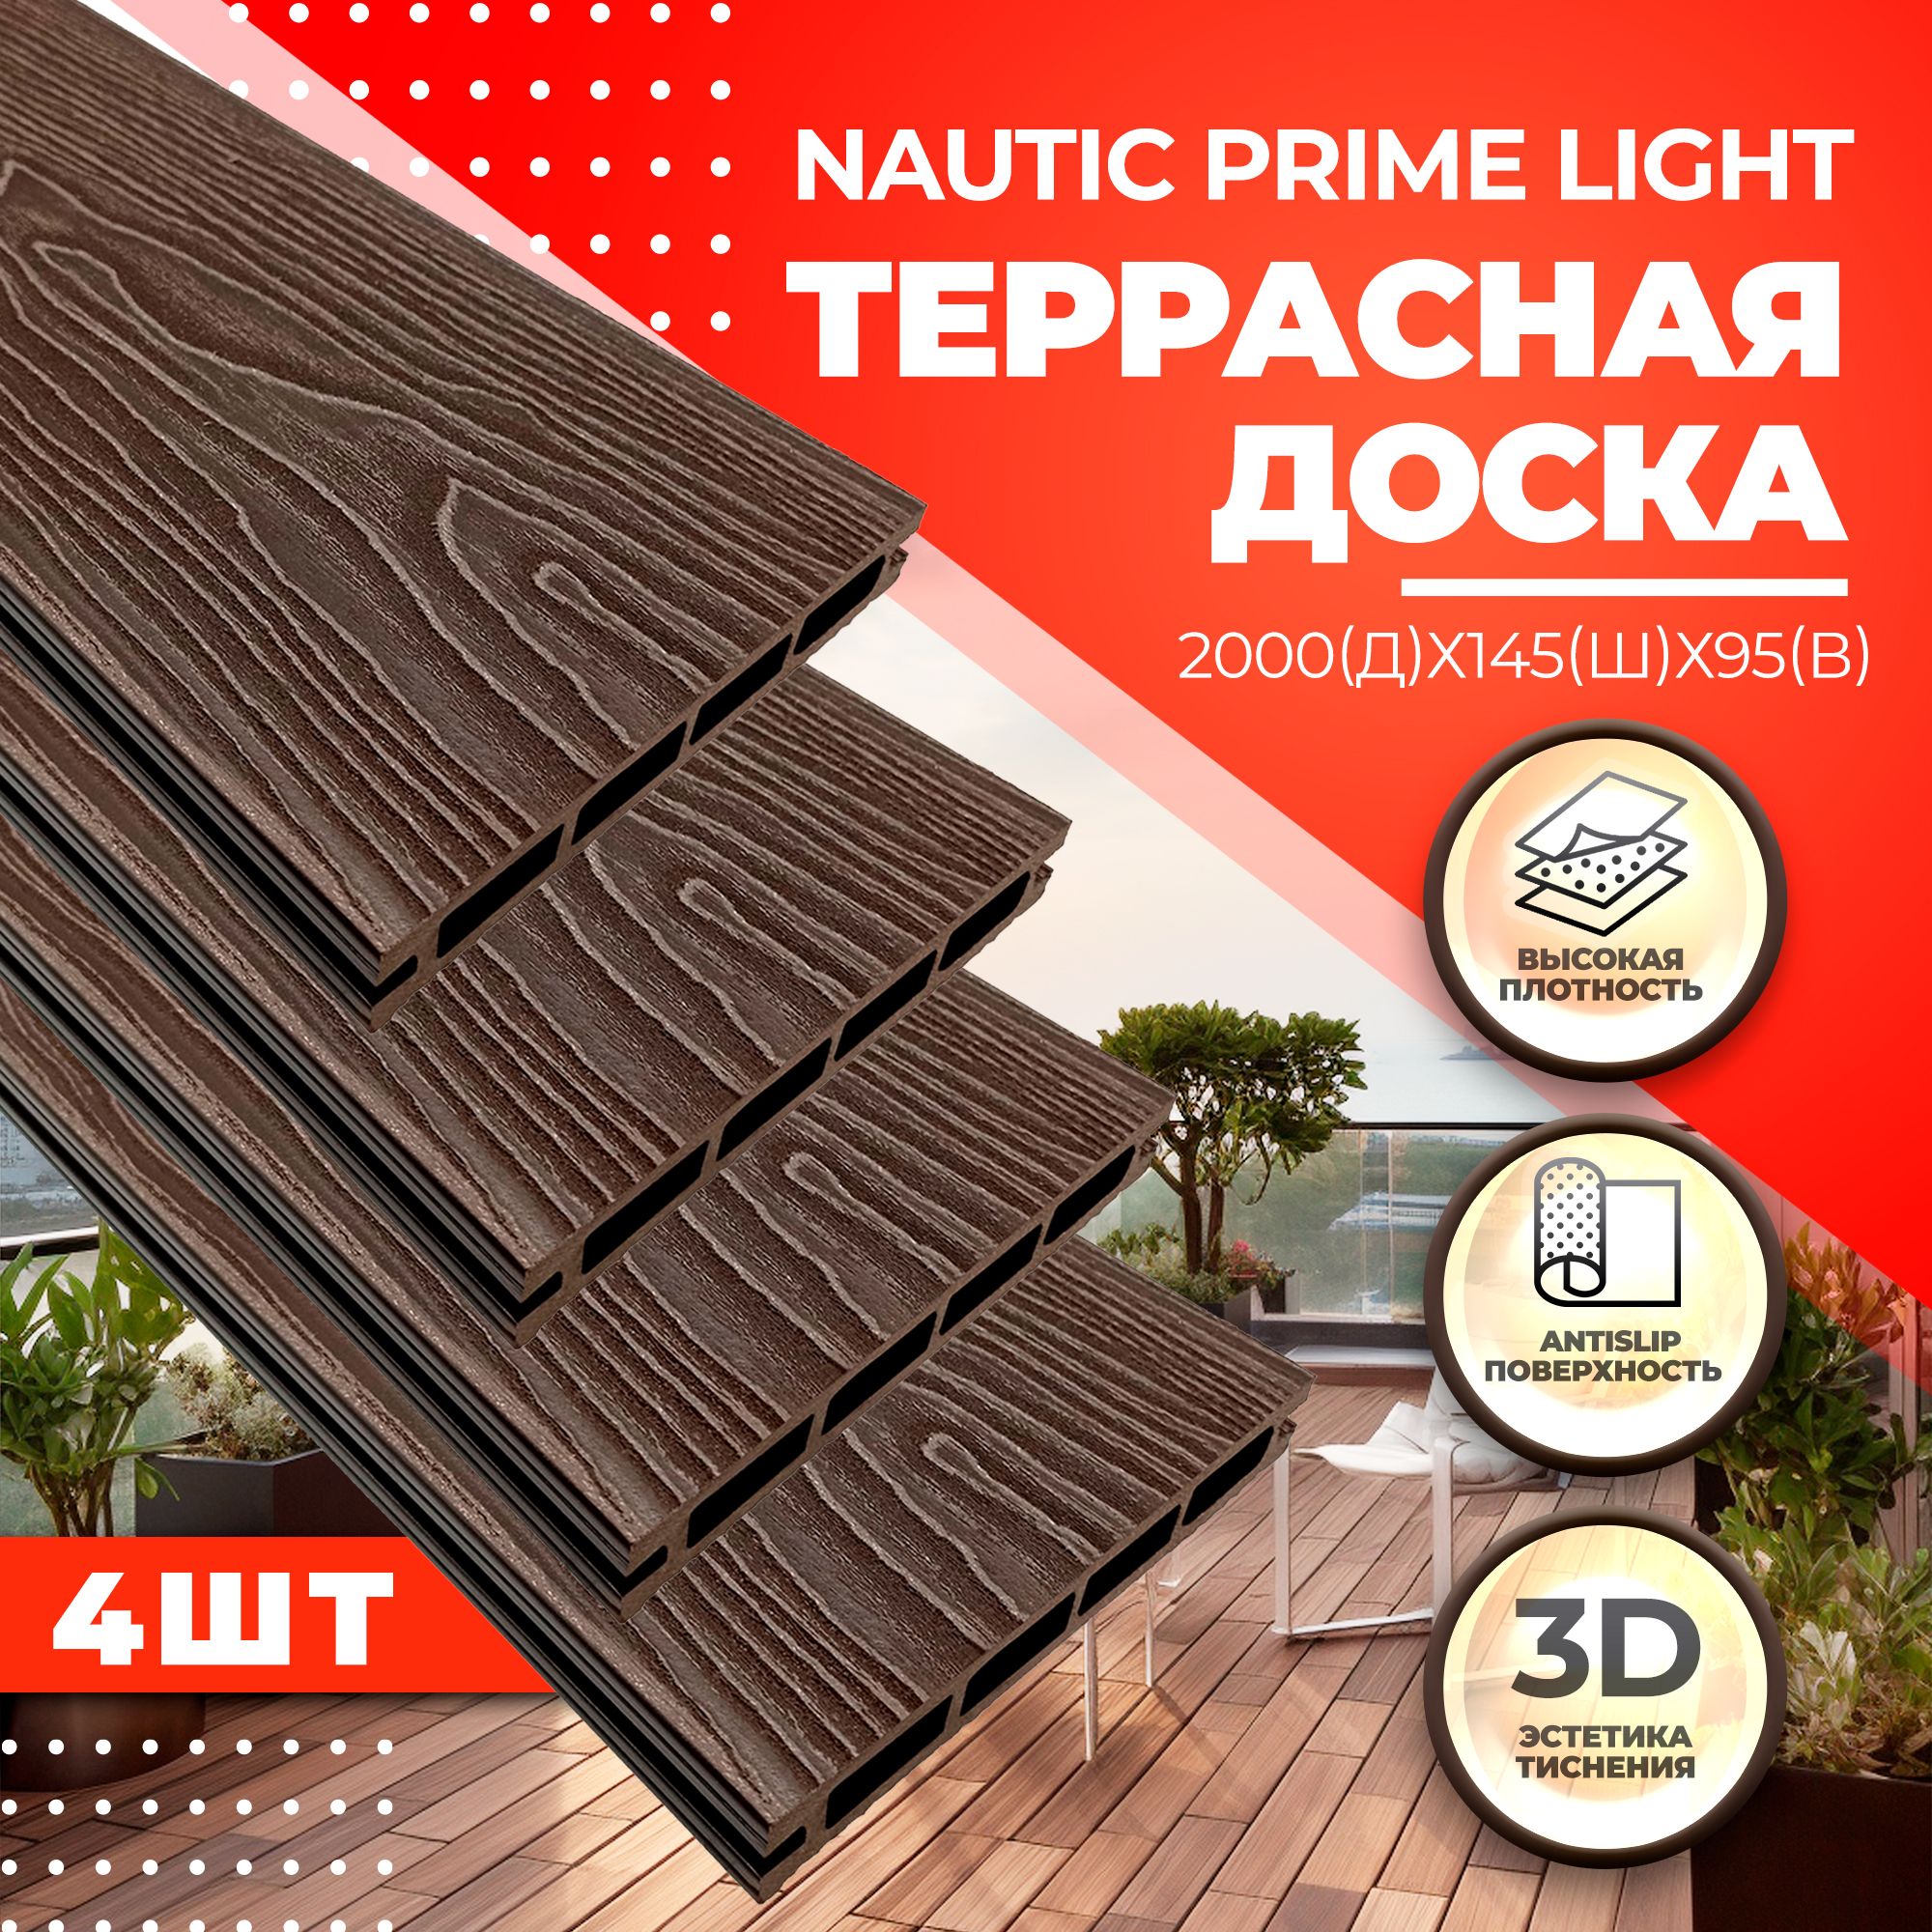 Комплект террасной доски NauticPrime Light Esthetic Wood CNPL2000V, венге, 4 шт. террасная доска из дпк ecodeck